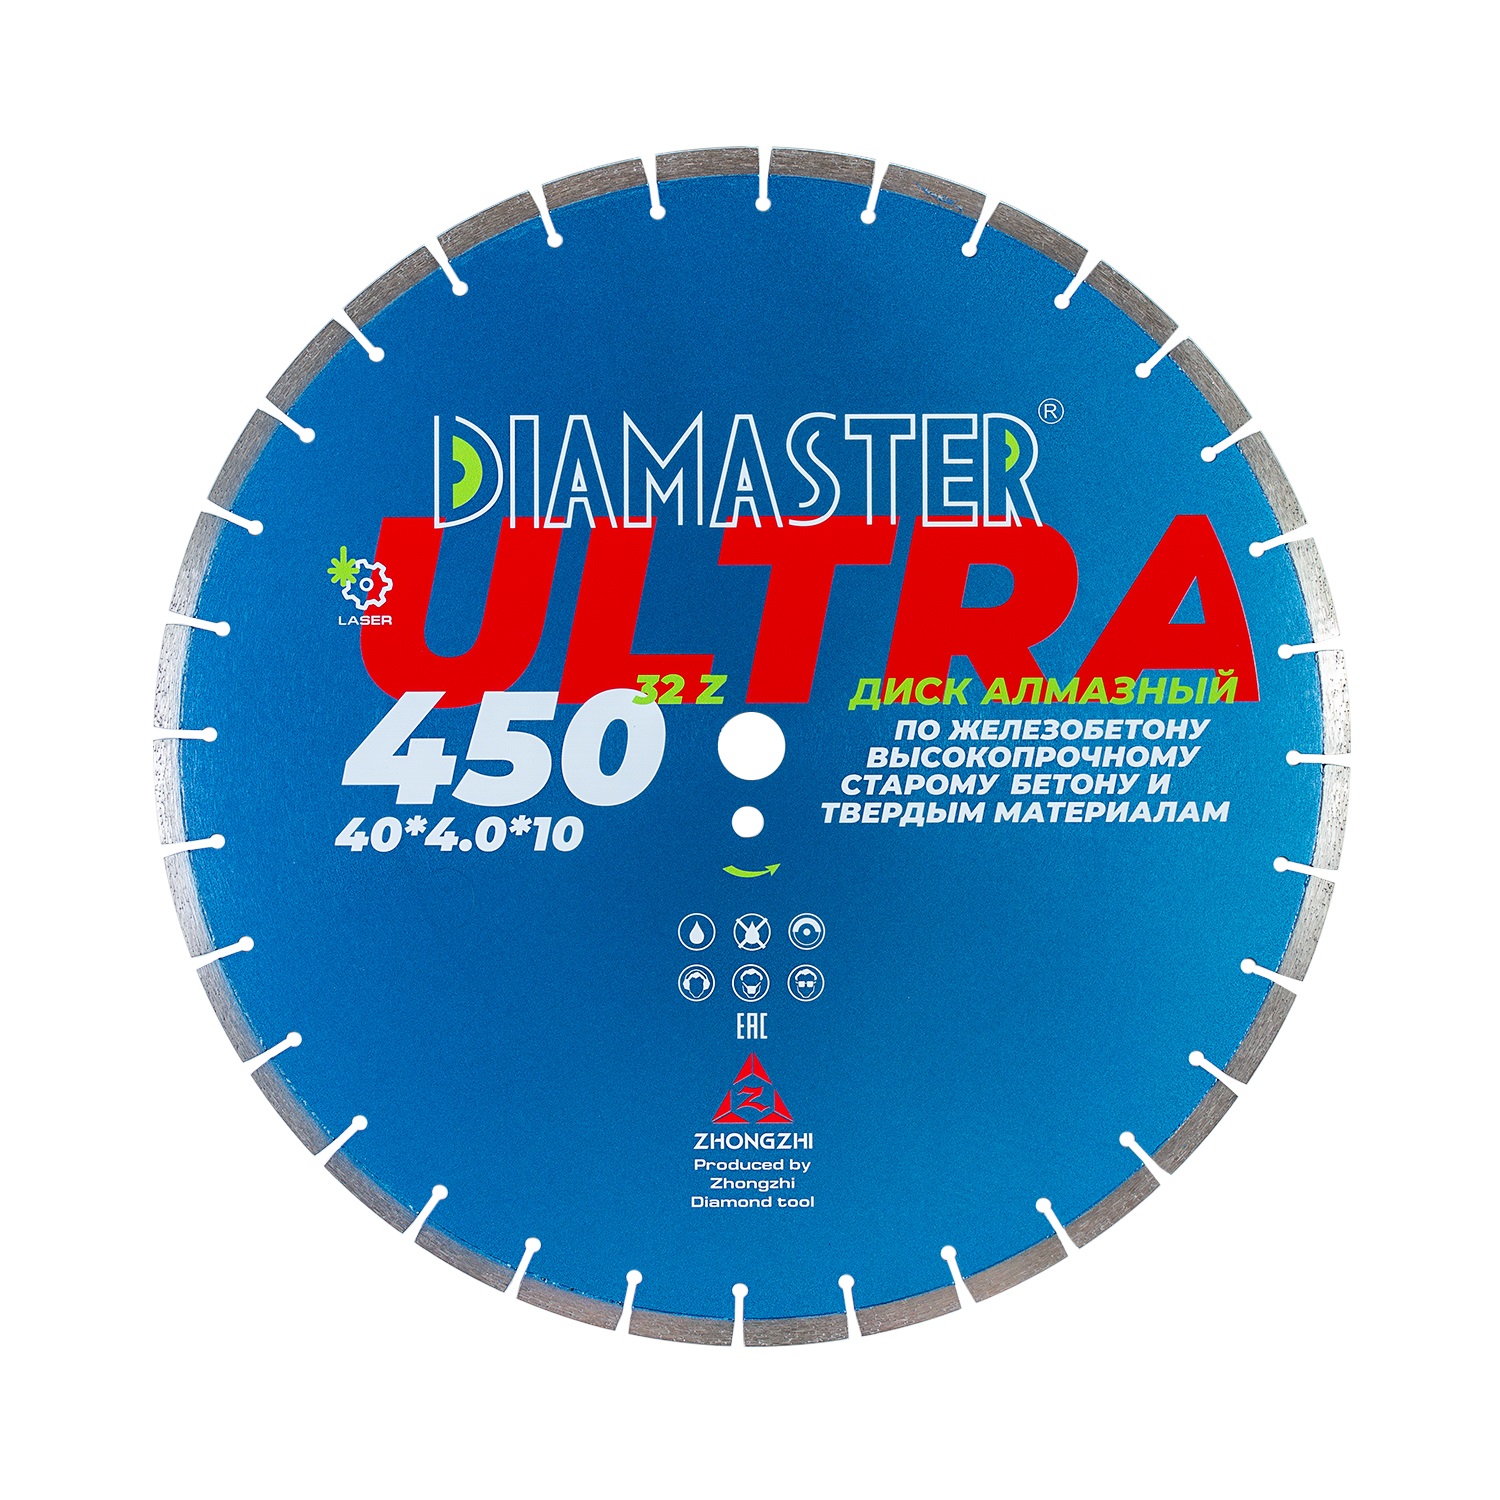 Диск сегментный Laser ULTRA д.450*2,8*25,4 (40*4,0*10)мм | 32z/железобетон/wet/dry DIAMASTER диск сегментный gold д 400 25 4 20 0 40 3 0 10 мм 28z асфальт wet diamaster